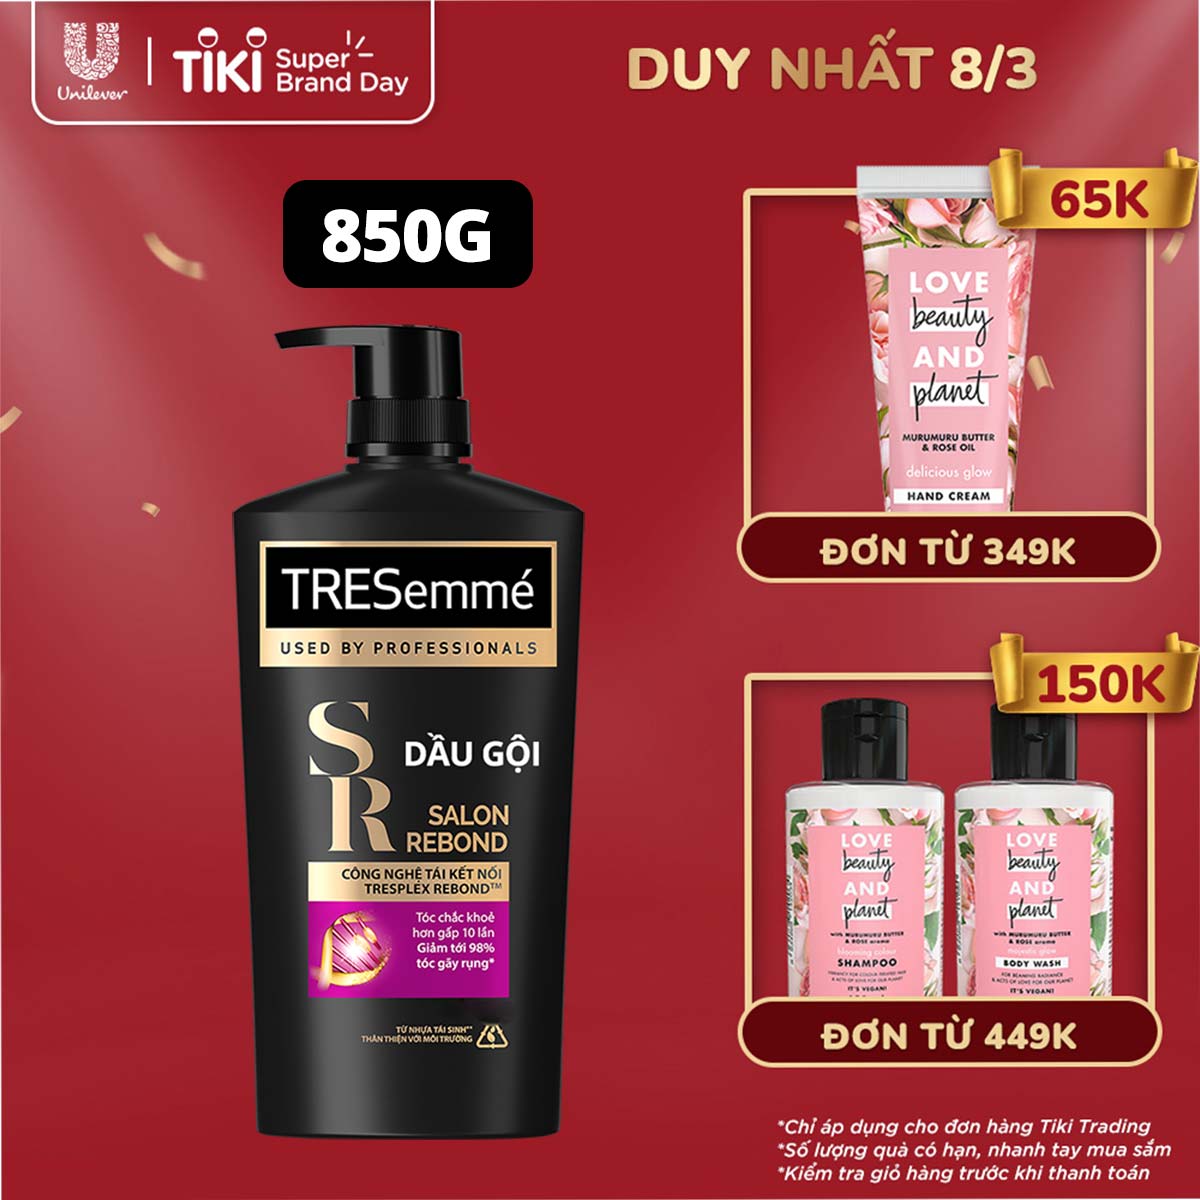 Dầu gội TRESEMME Salon Rebond dưỡng tóc hư tổn với Công nghệ Tái kết nối Keratin ngăn gãy rụng đến 98% 850g